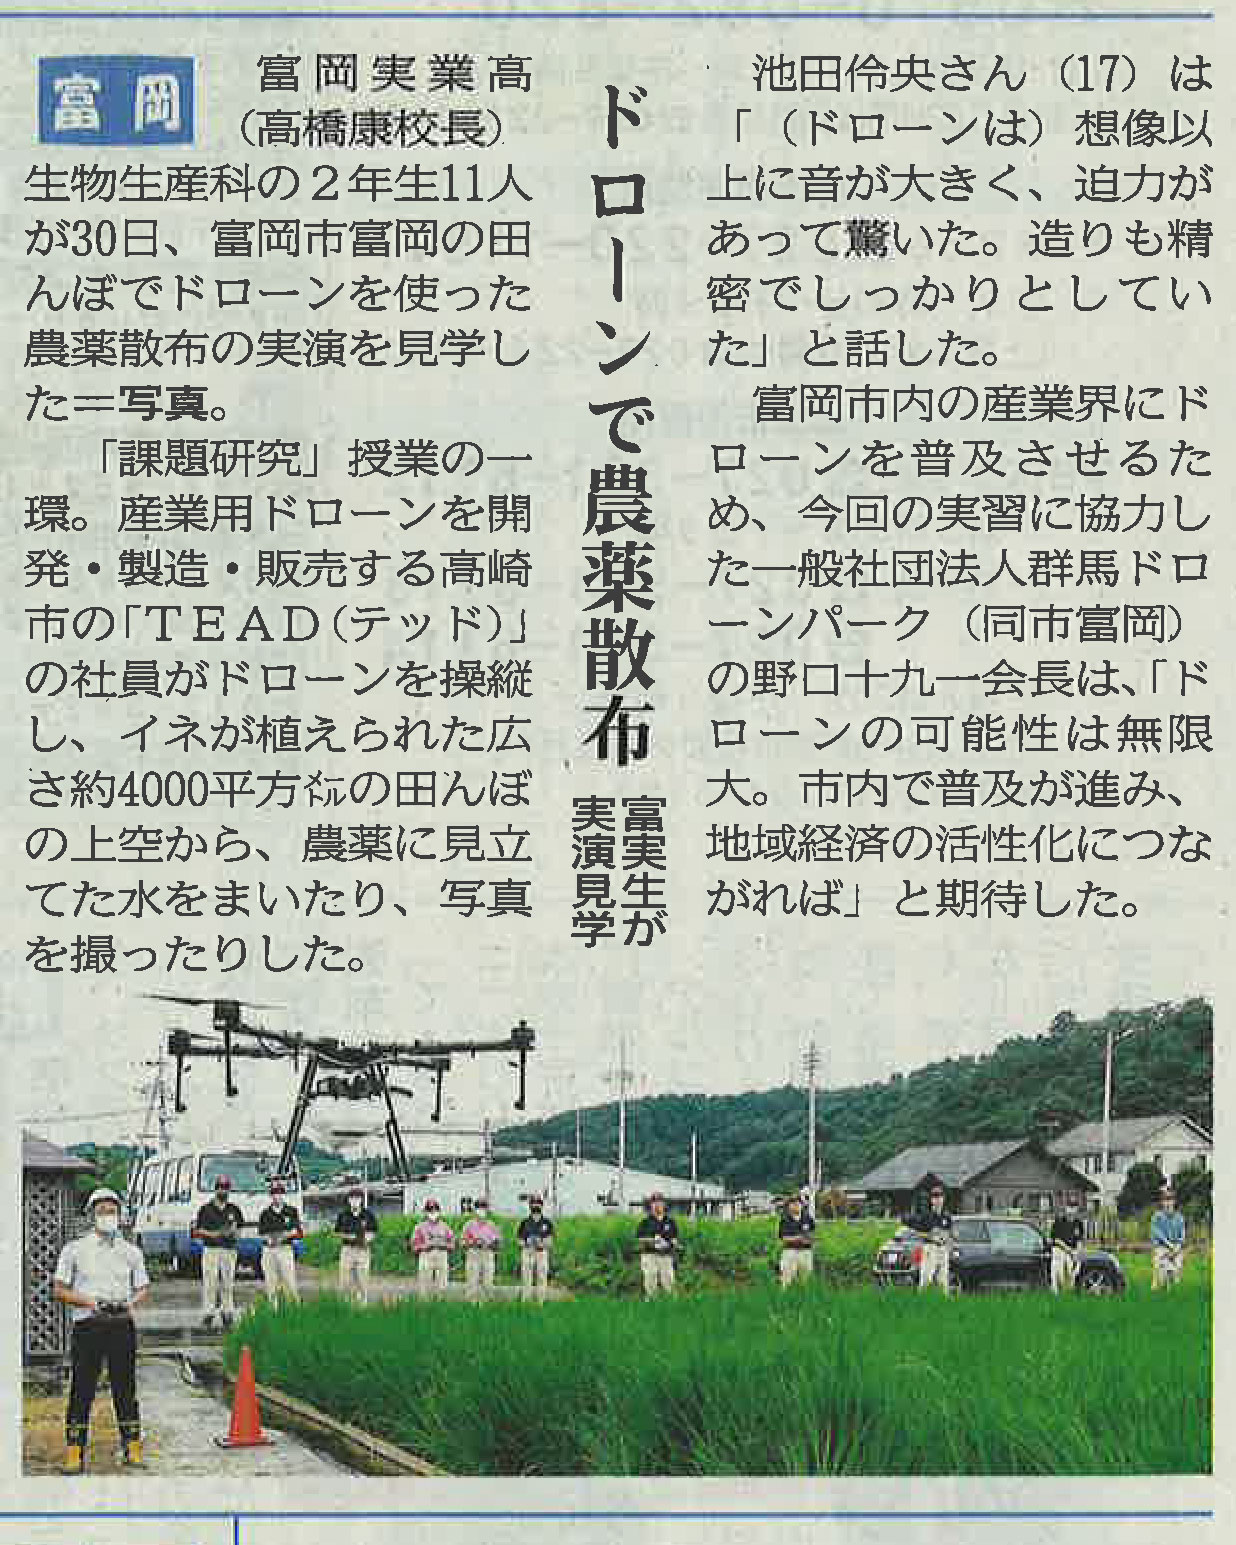 群馬県立富岡実業高等学校にて行われた農薬散布ドローンデモの様子が上毛新聞に掲載されました Tead